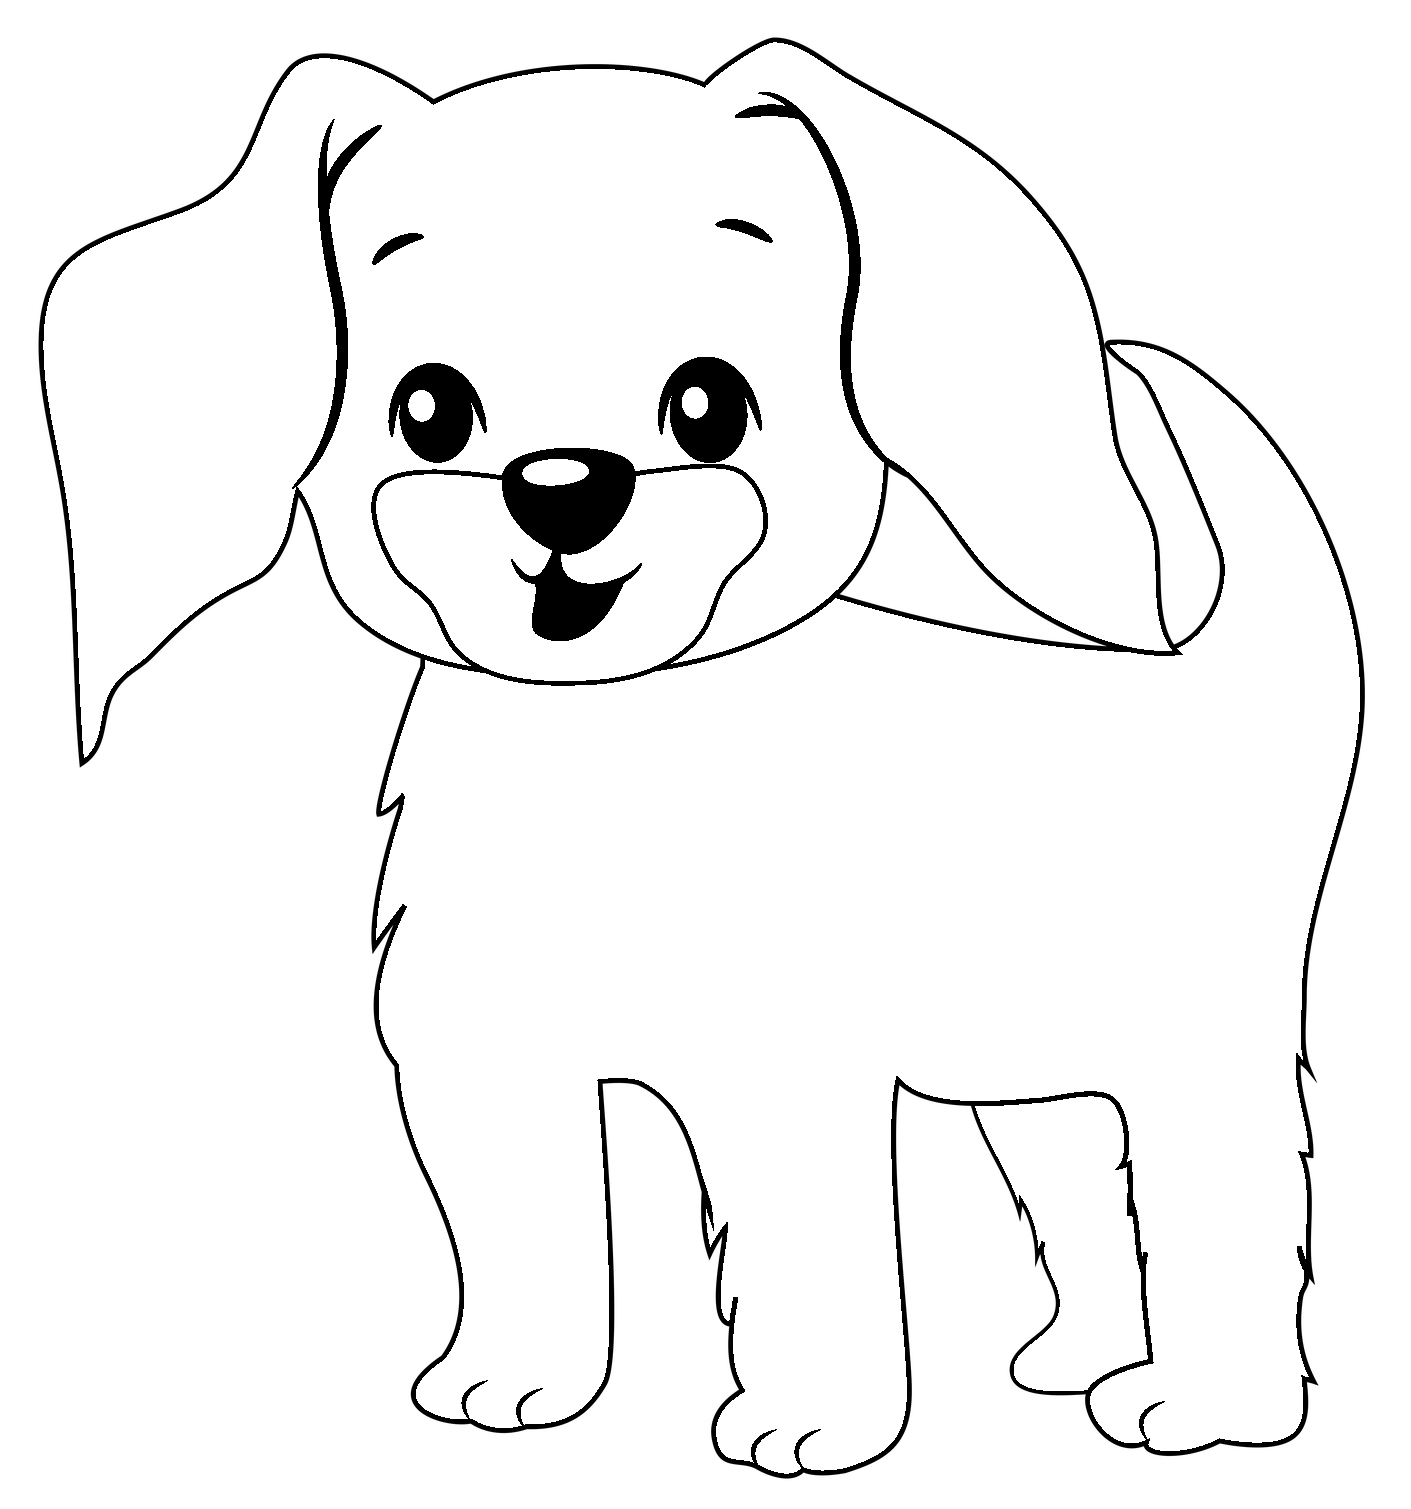 Página para colorear de perro cachorro de estilo de dibujos animados lindo